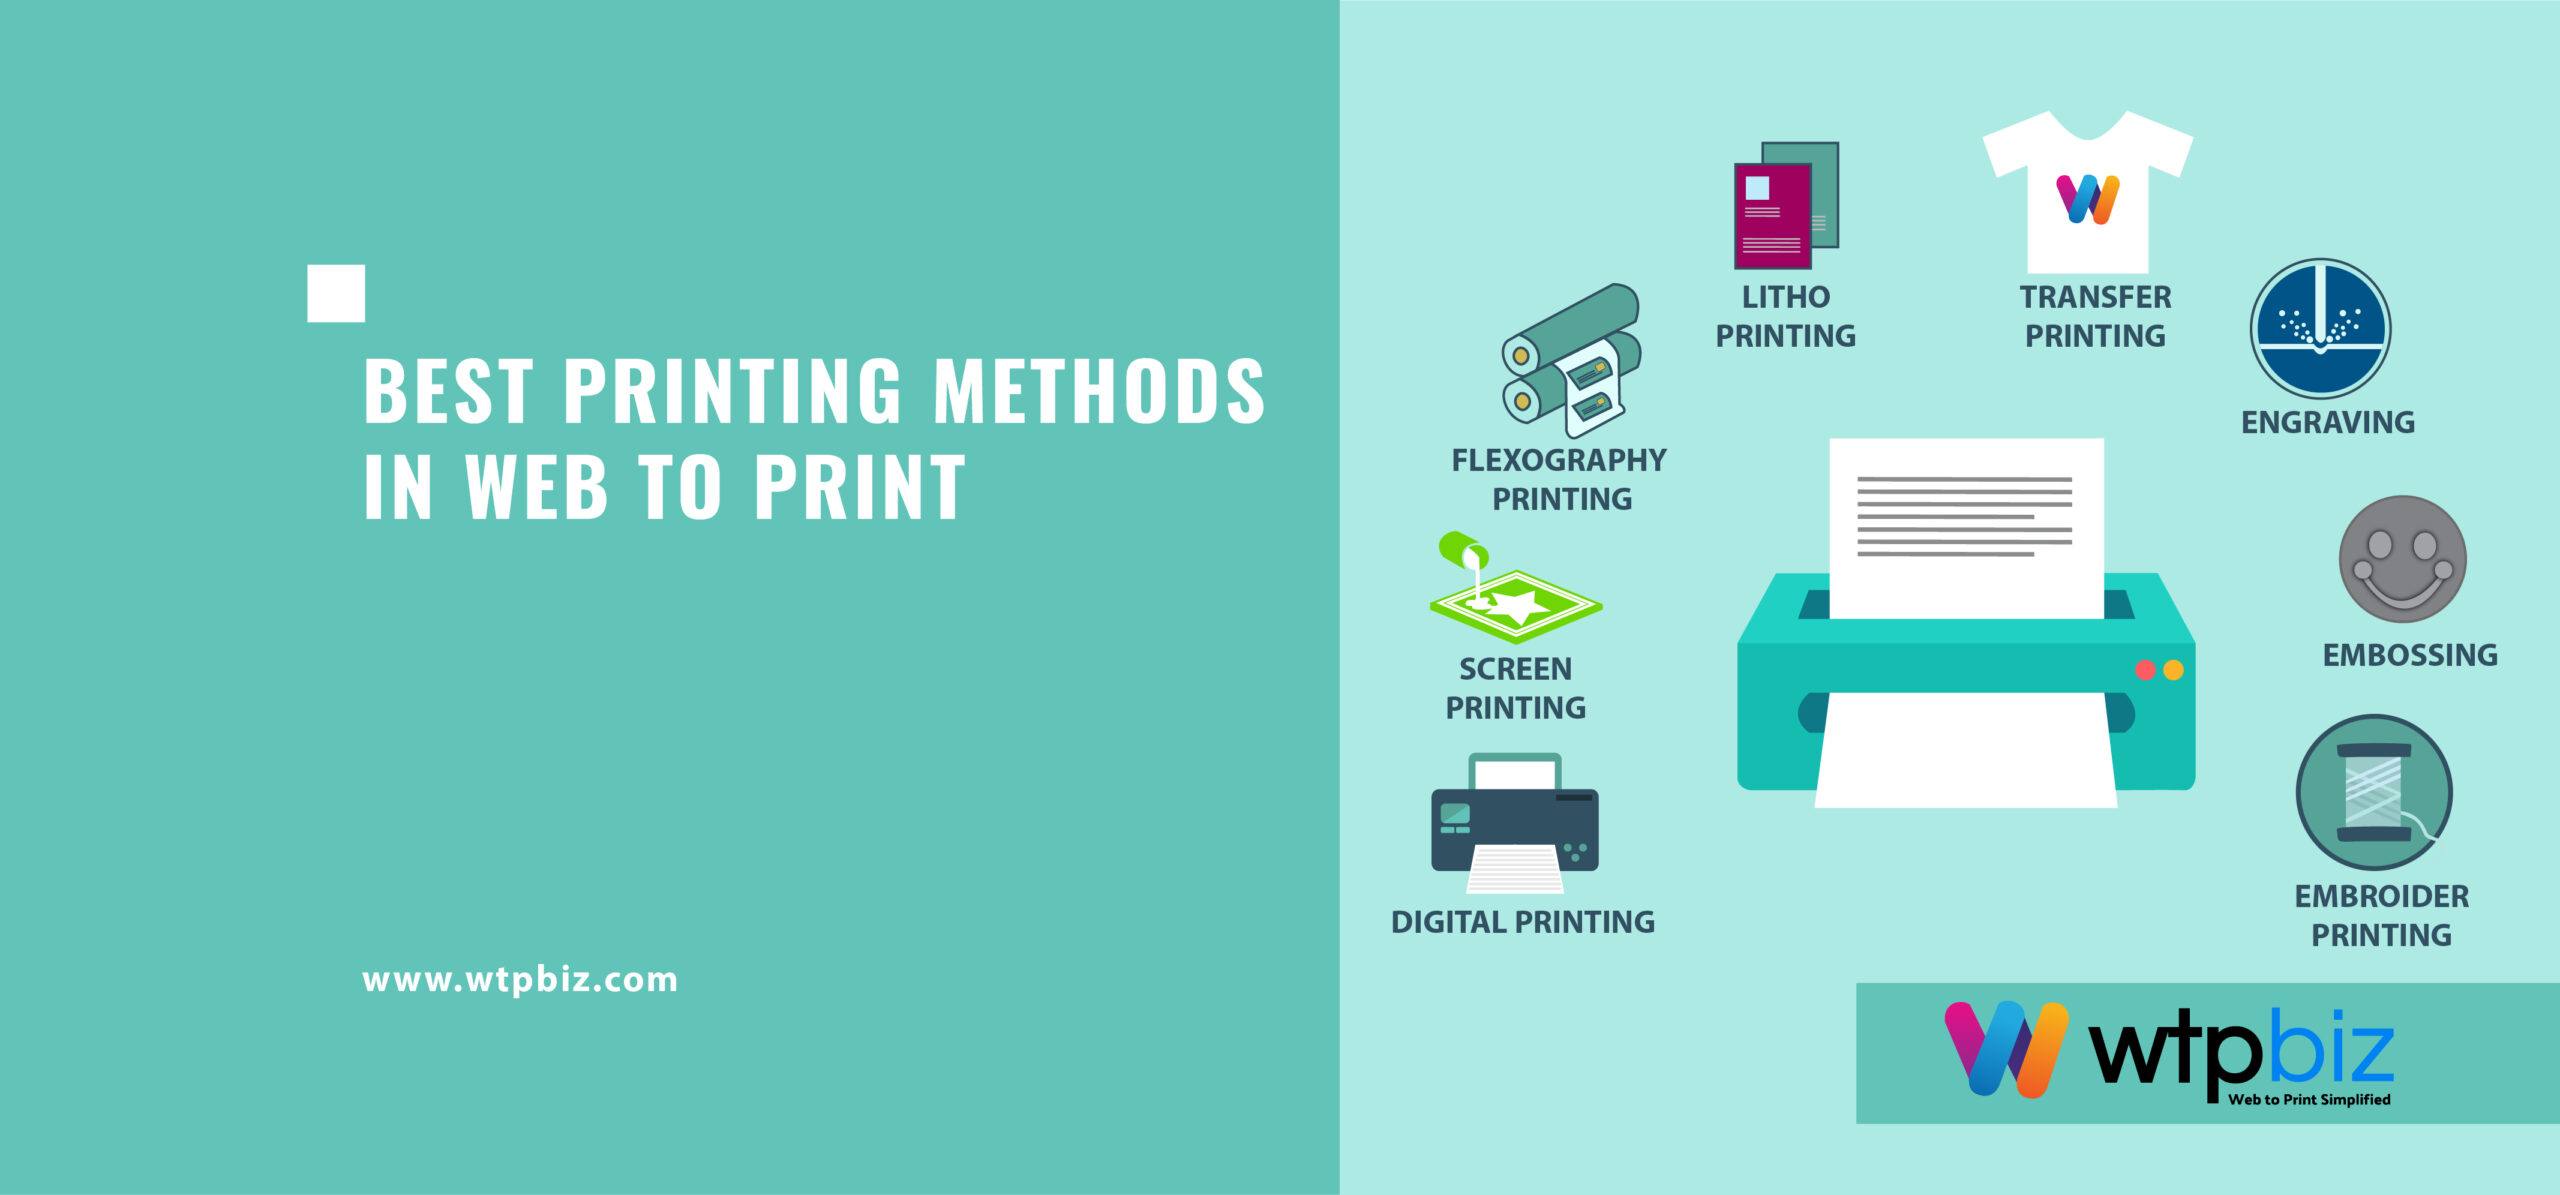 Best Printing Methods in Web to Print- 2021